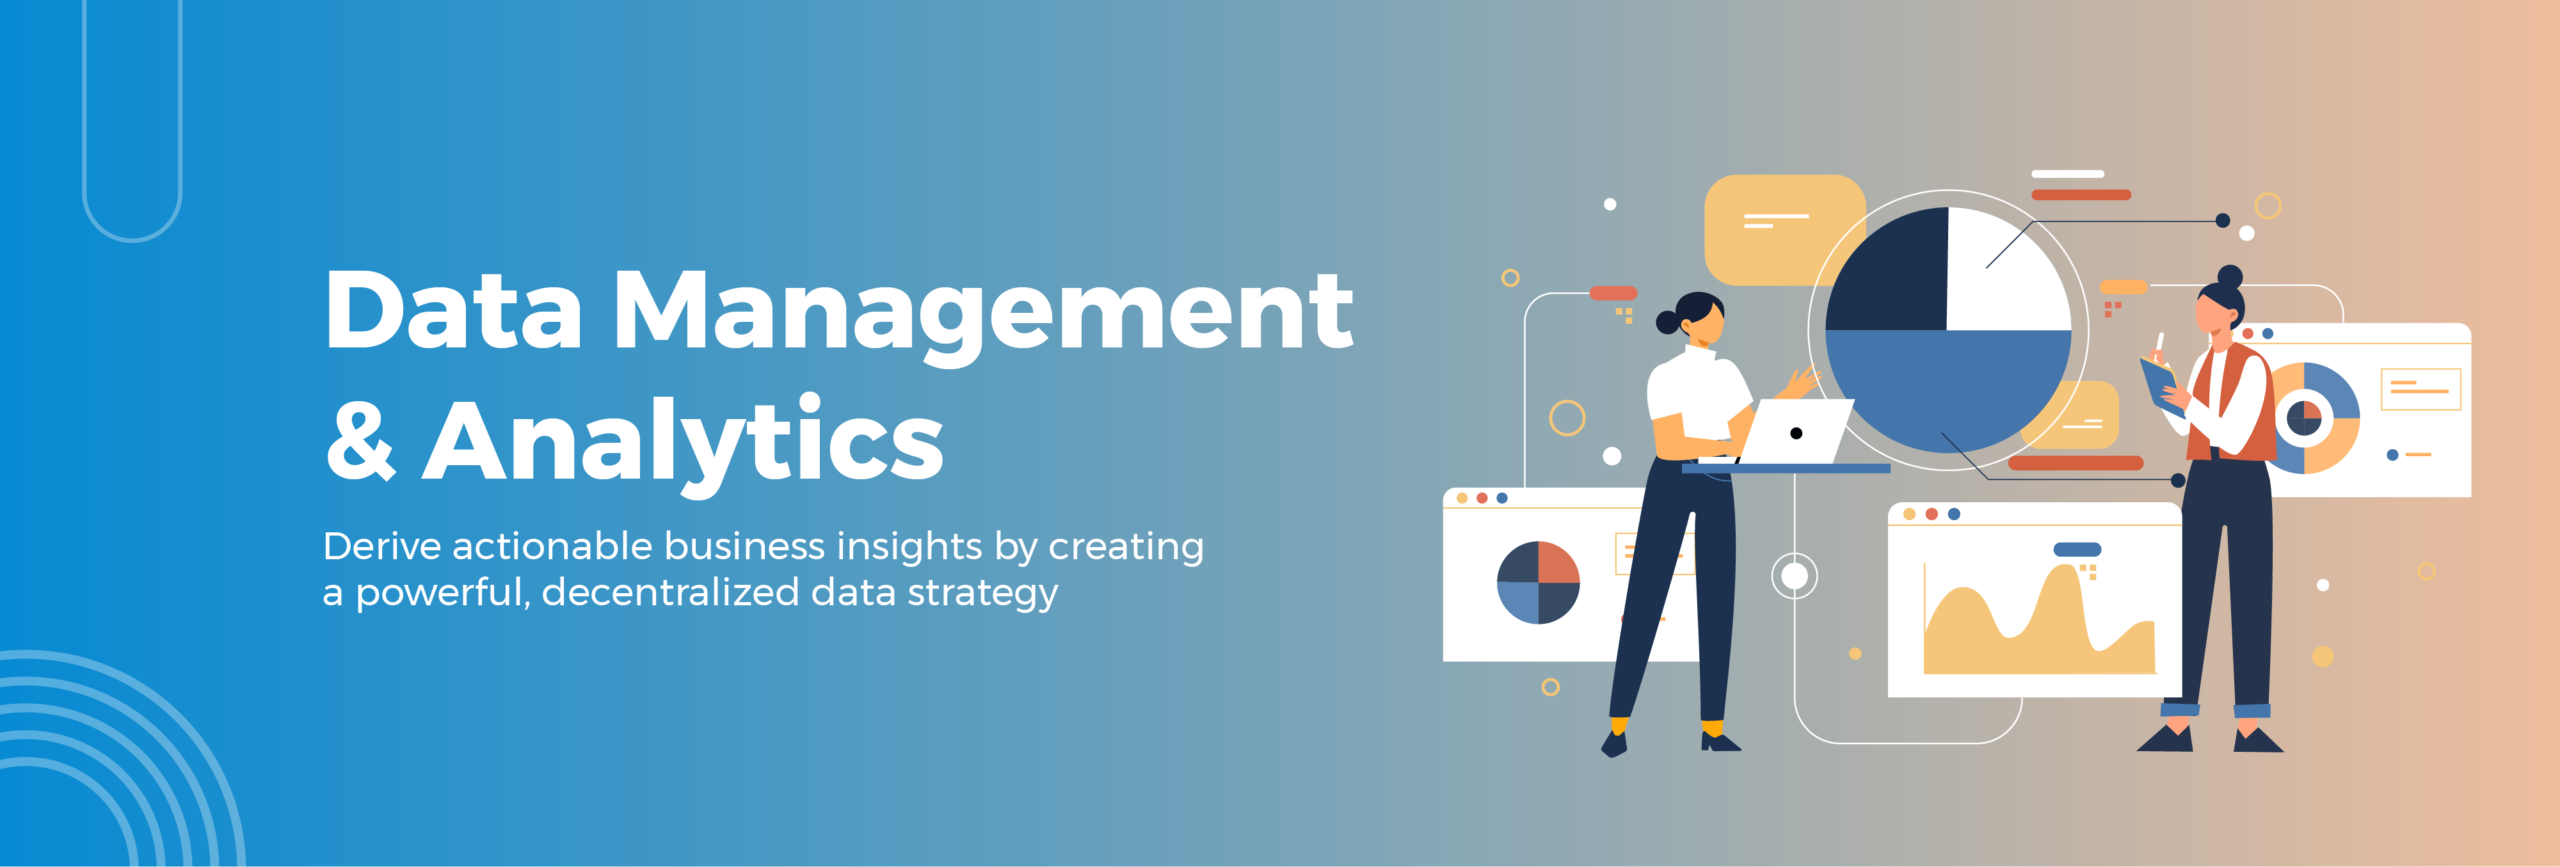 data management & analytics